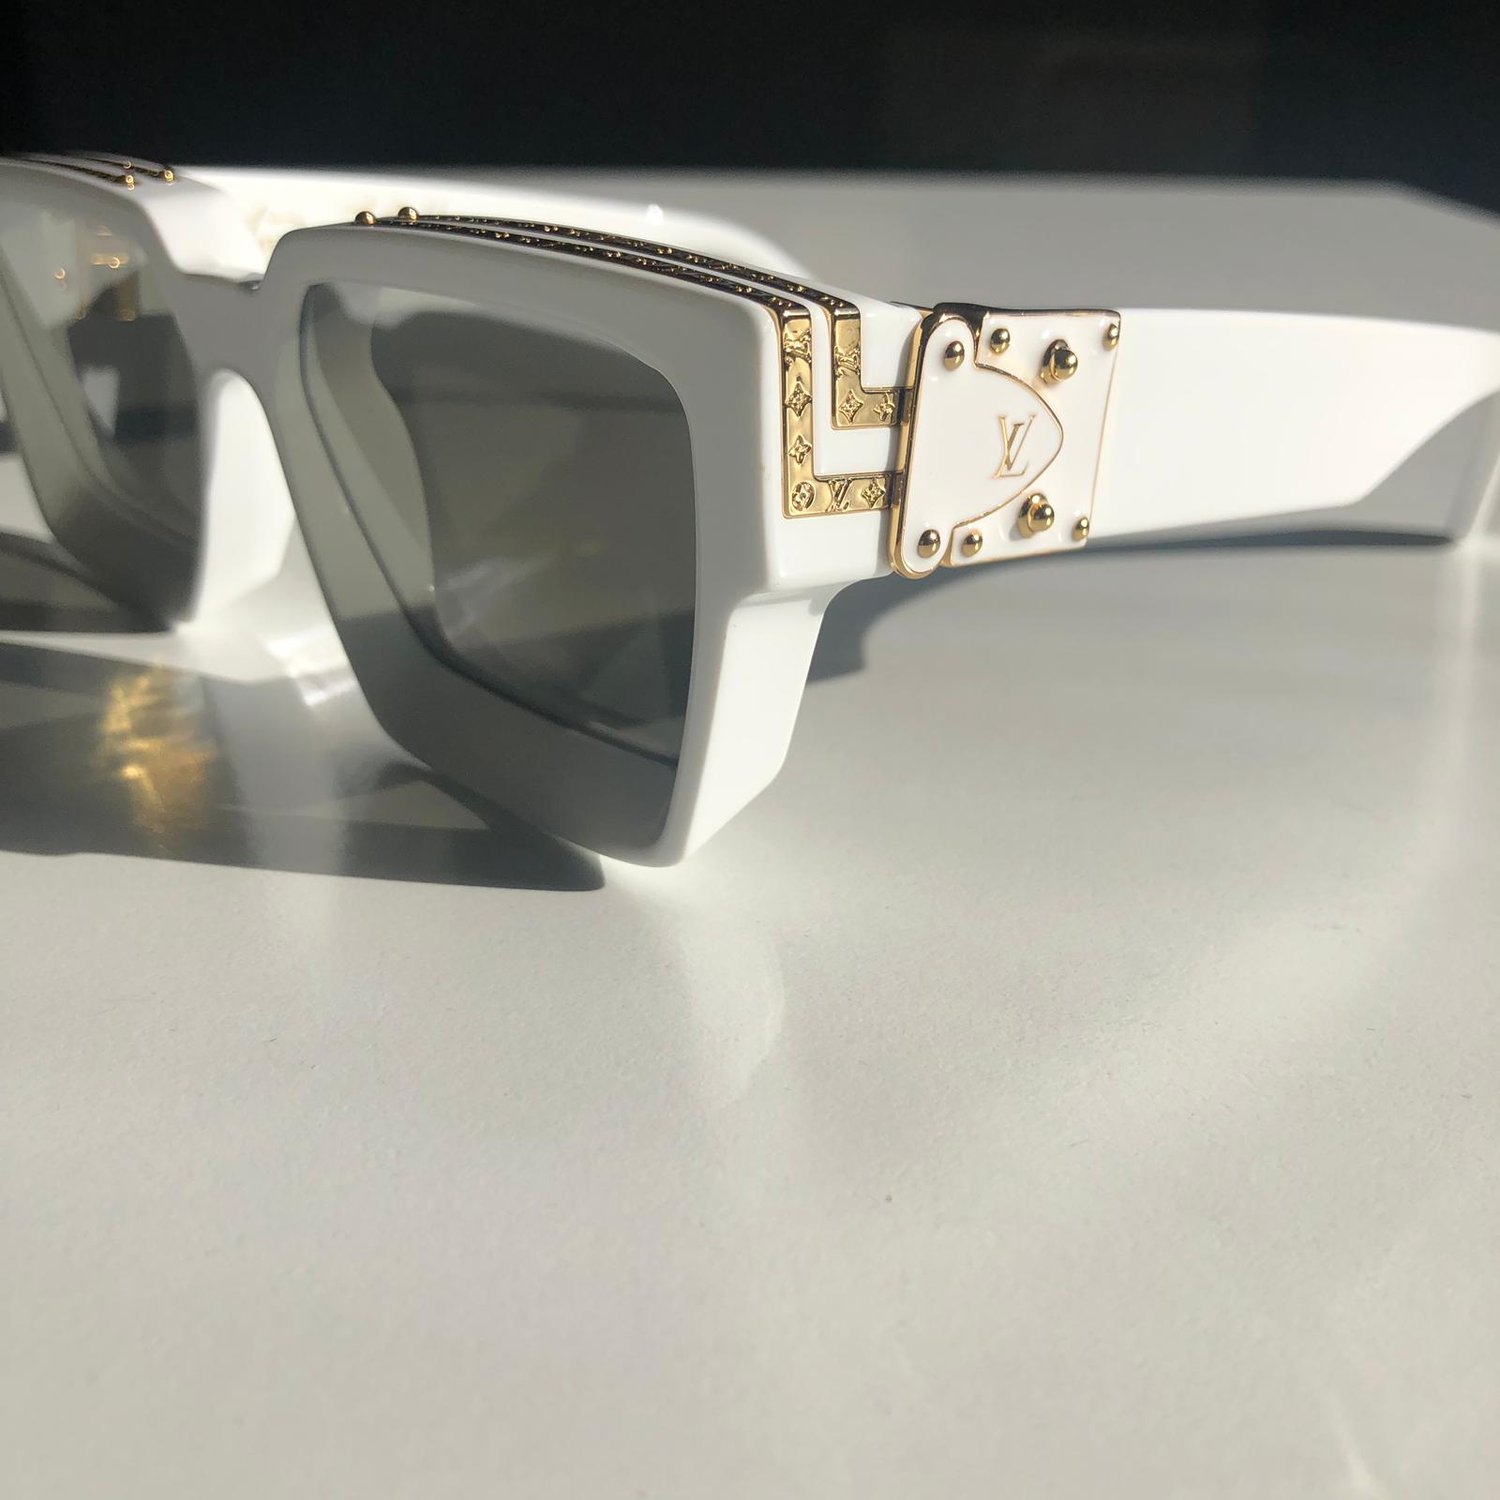 1.1 Millionaires Sunglasses S00 - Accessories